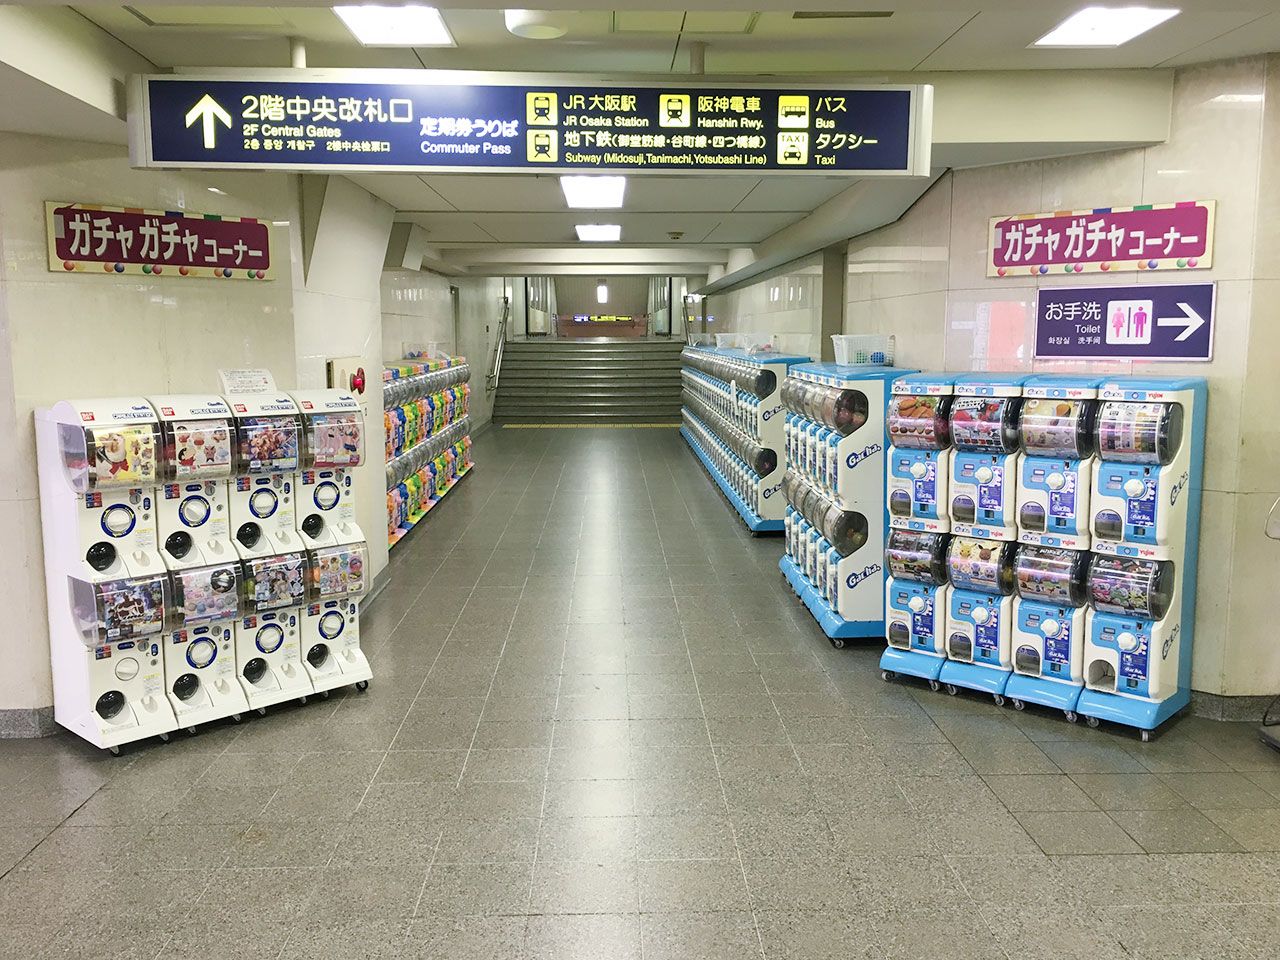 阪急電鉄 公式 U Tvitteri 阪急梅田駅の中に ガチャガチャコーナー があるのはご存知でしょうか T Co 3xtxxhf8tl Tvitter